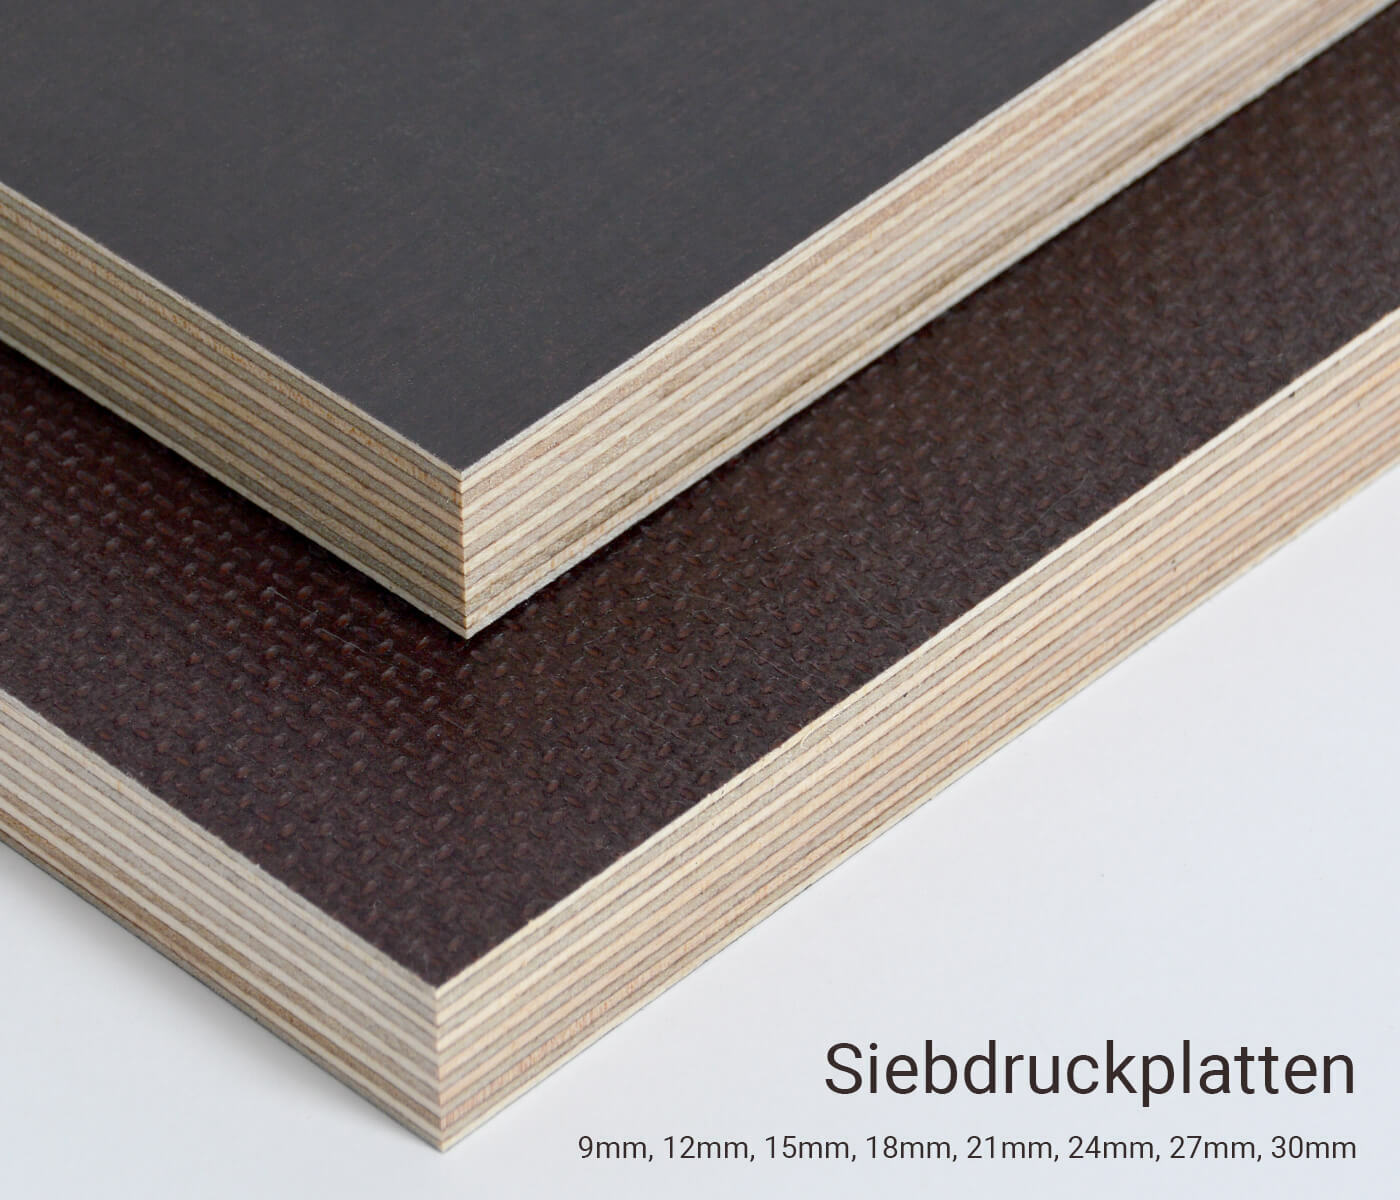 Siebdruckplatte 18mm Zuschnitt Multiplex Birke Holz Bodenplatte 90x130 cm